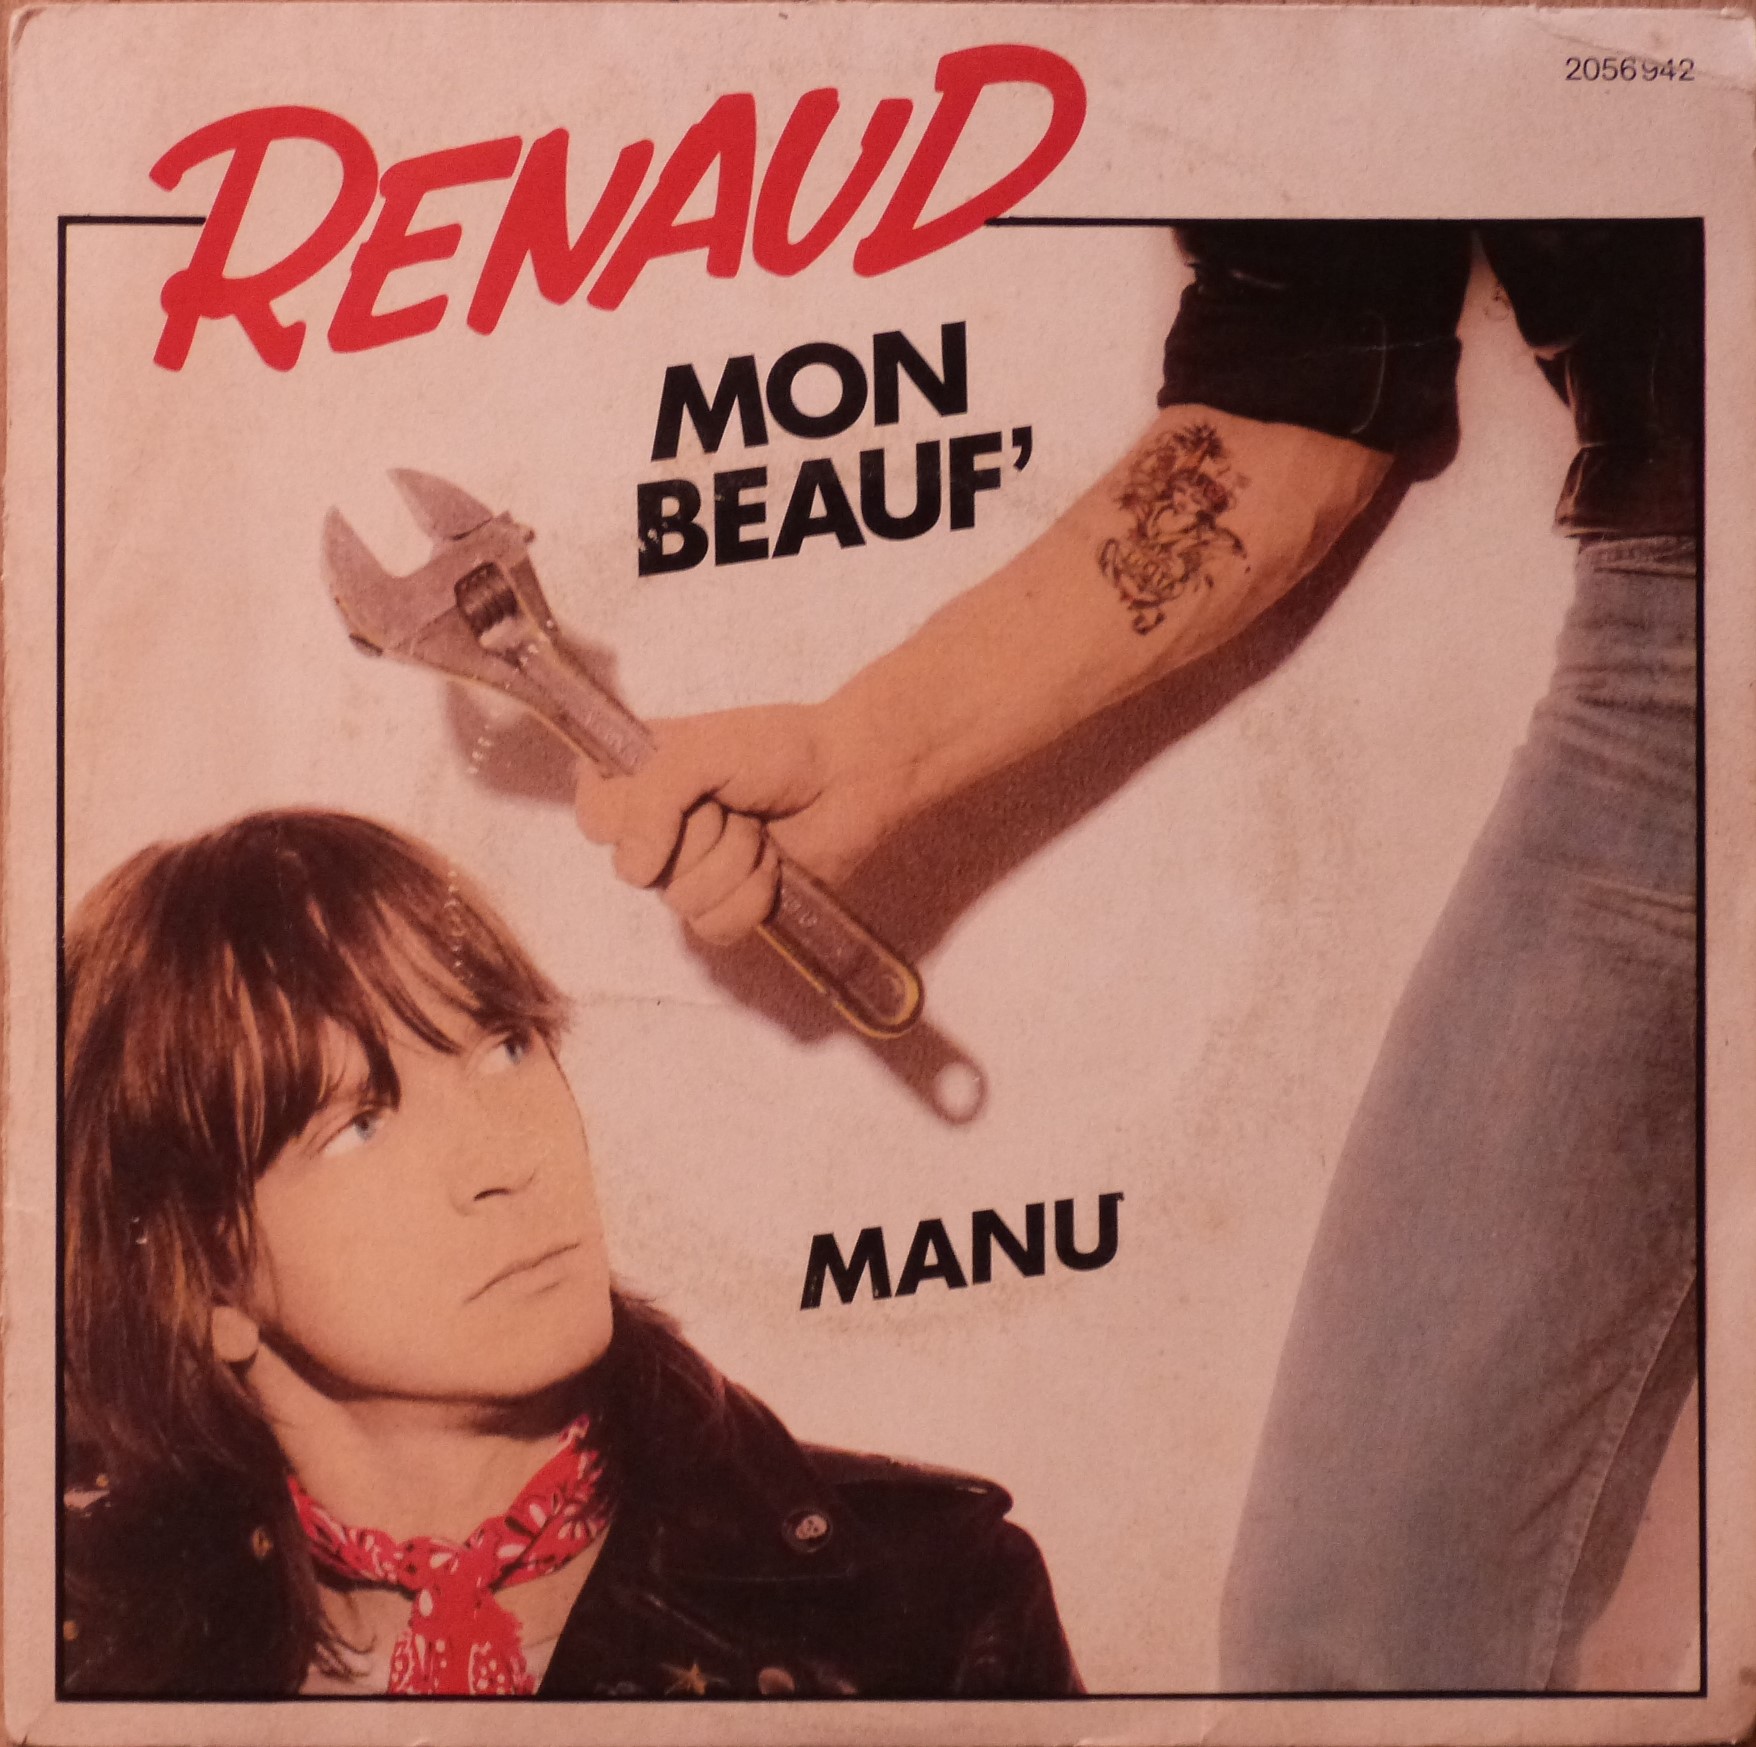 Renaud, Mon beauf